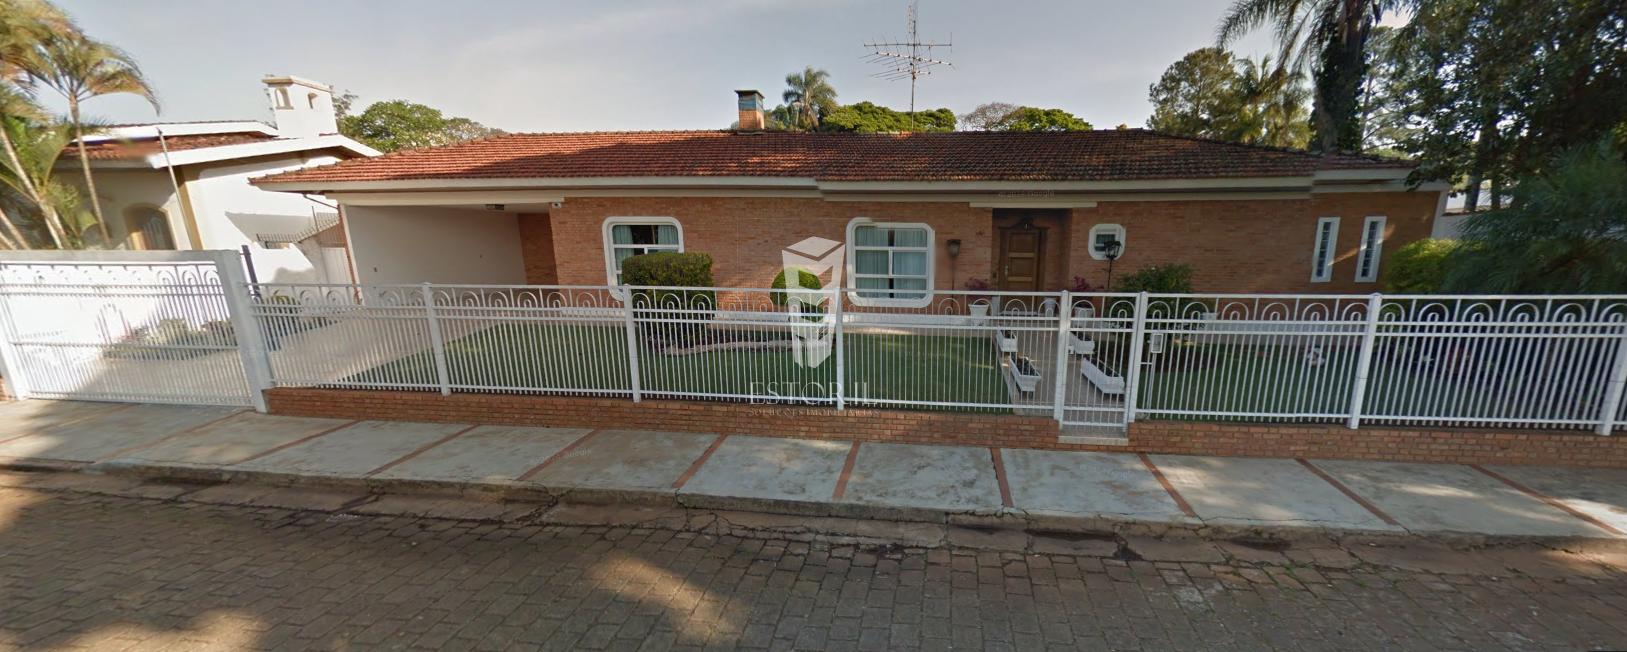 Casa com 4 dormitórios à venda, Jardim America, AVARE - SP